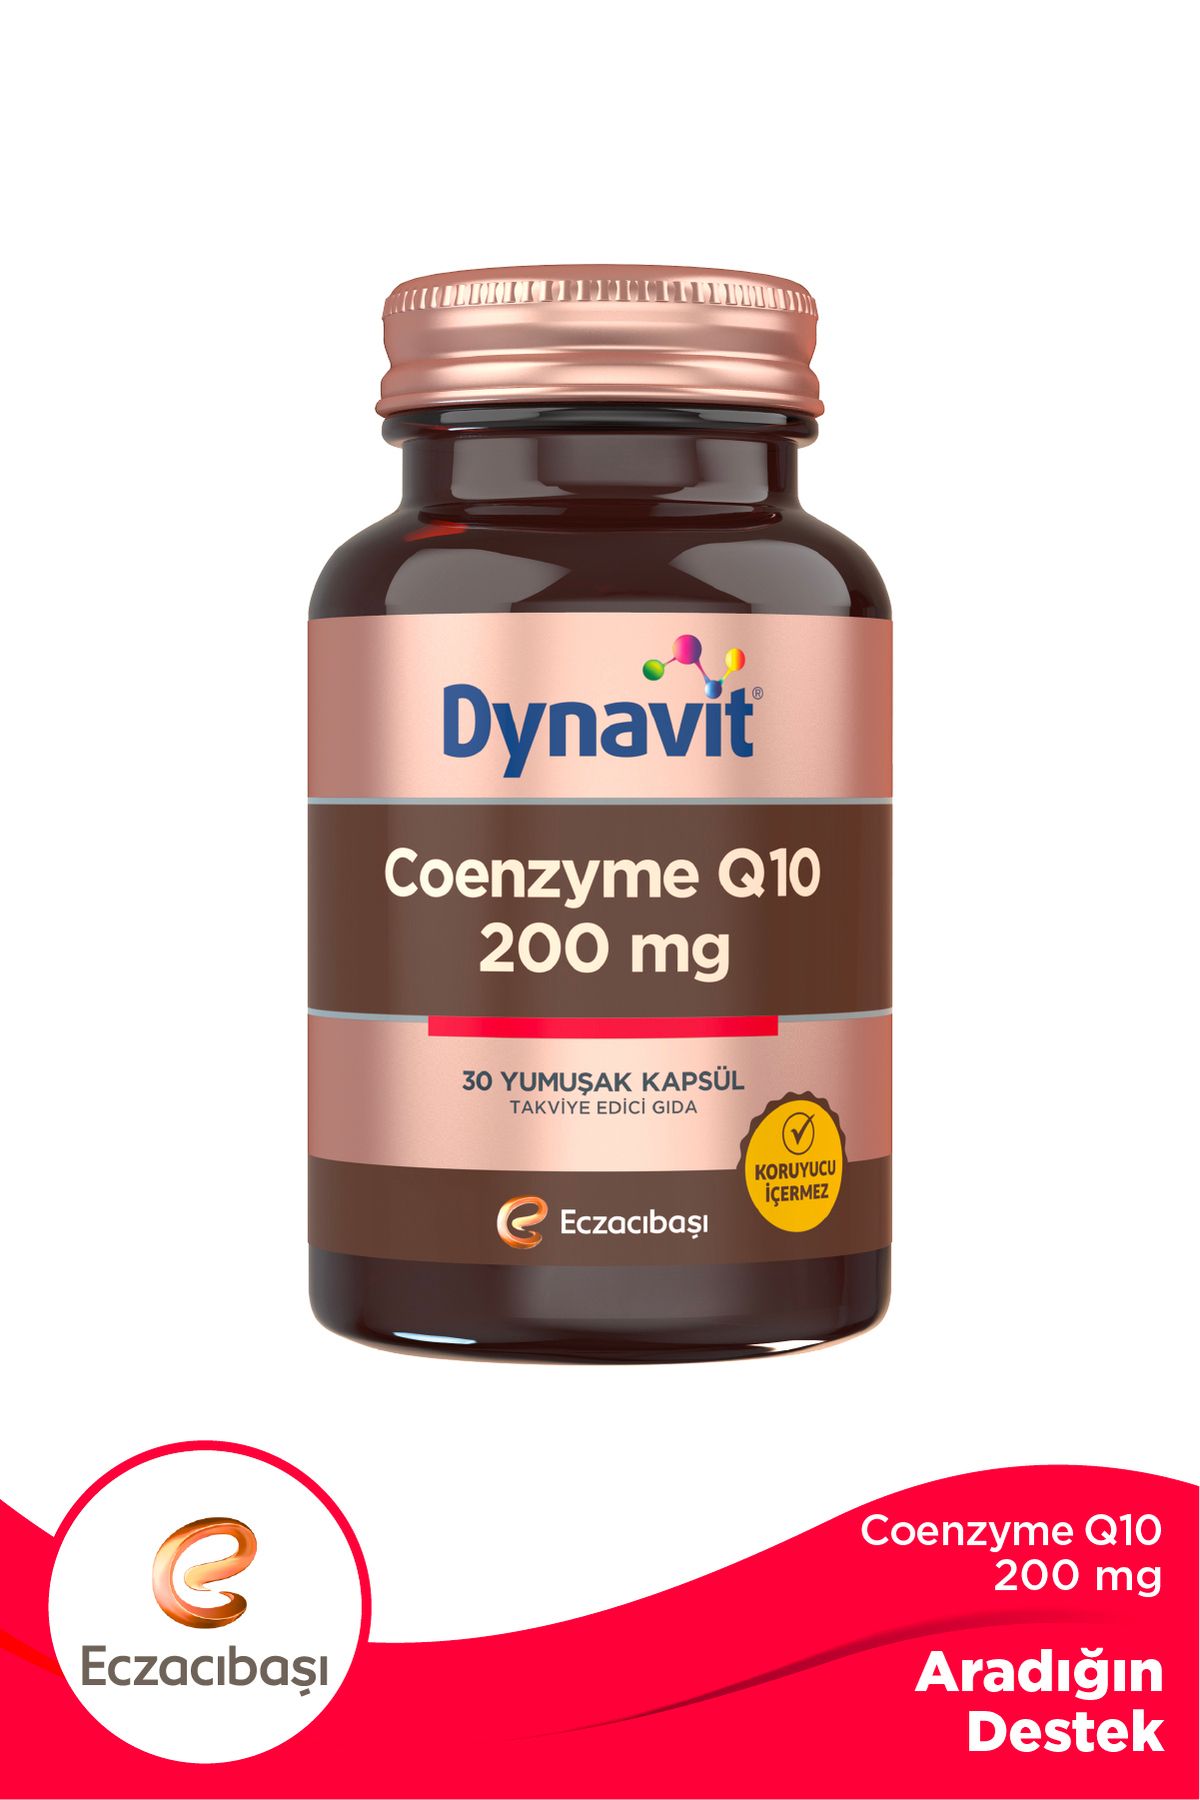 Dynavit Coenzyme Q10 200 Mg 30 Yumuşak Kapsül 200 mg 30Kapsül